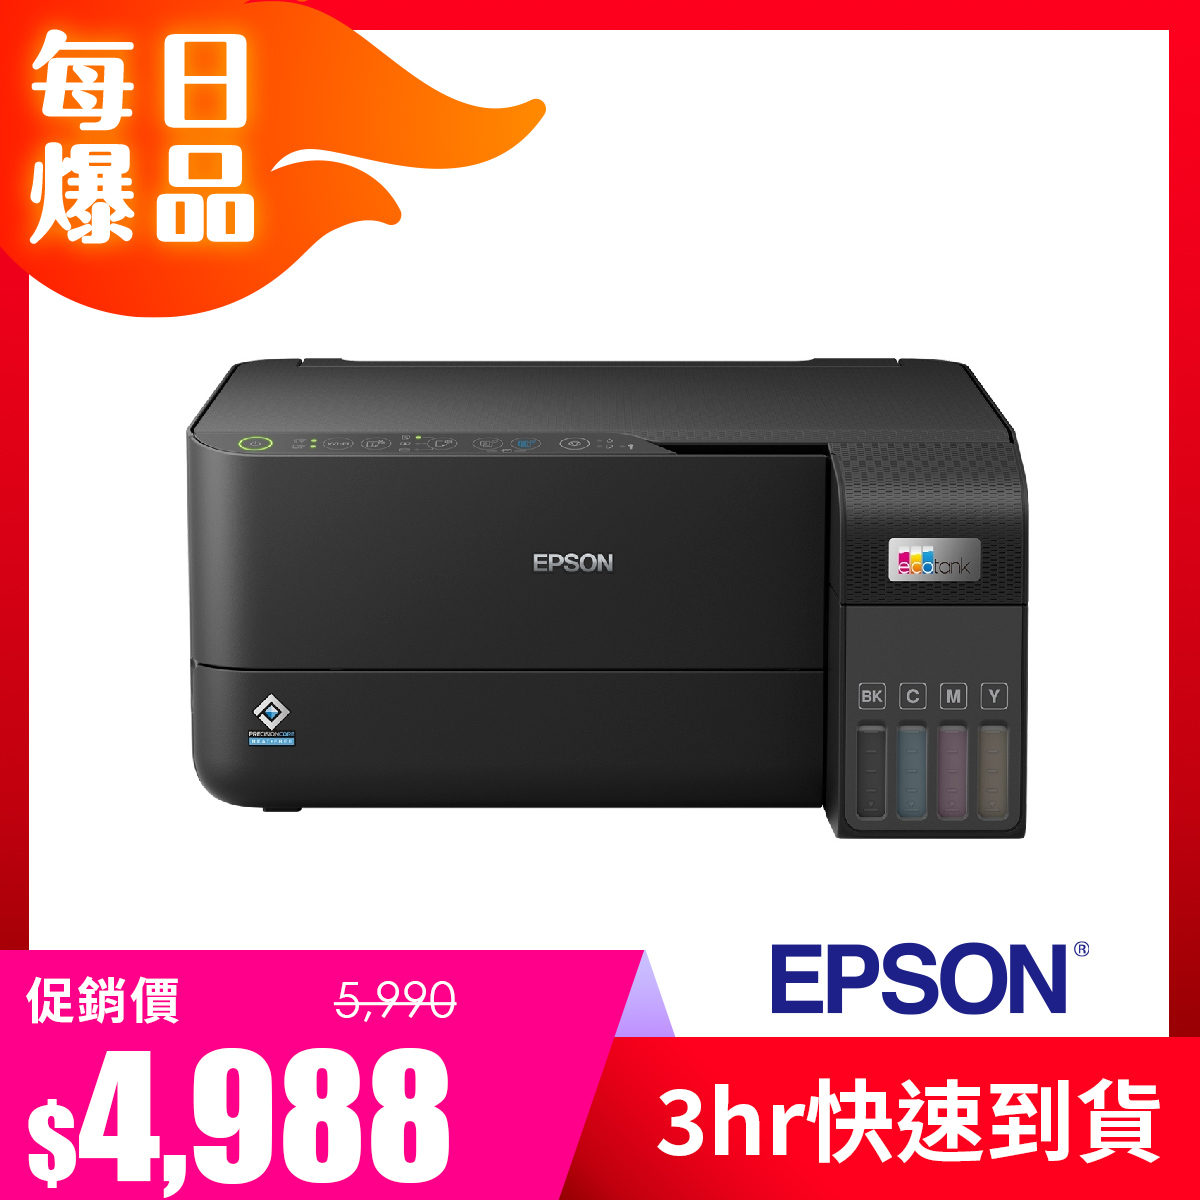 愛普生 EPSON L3550 三合一Wi-Fi 連續供墨複合機